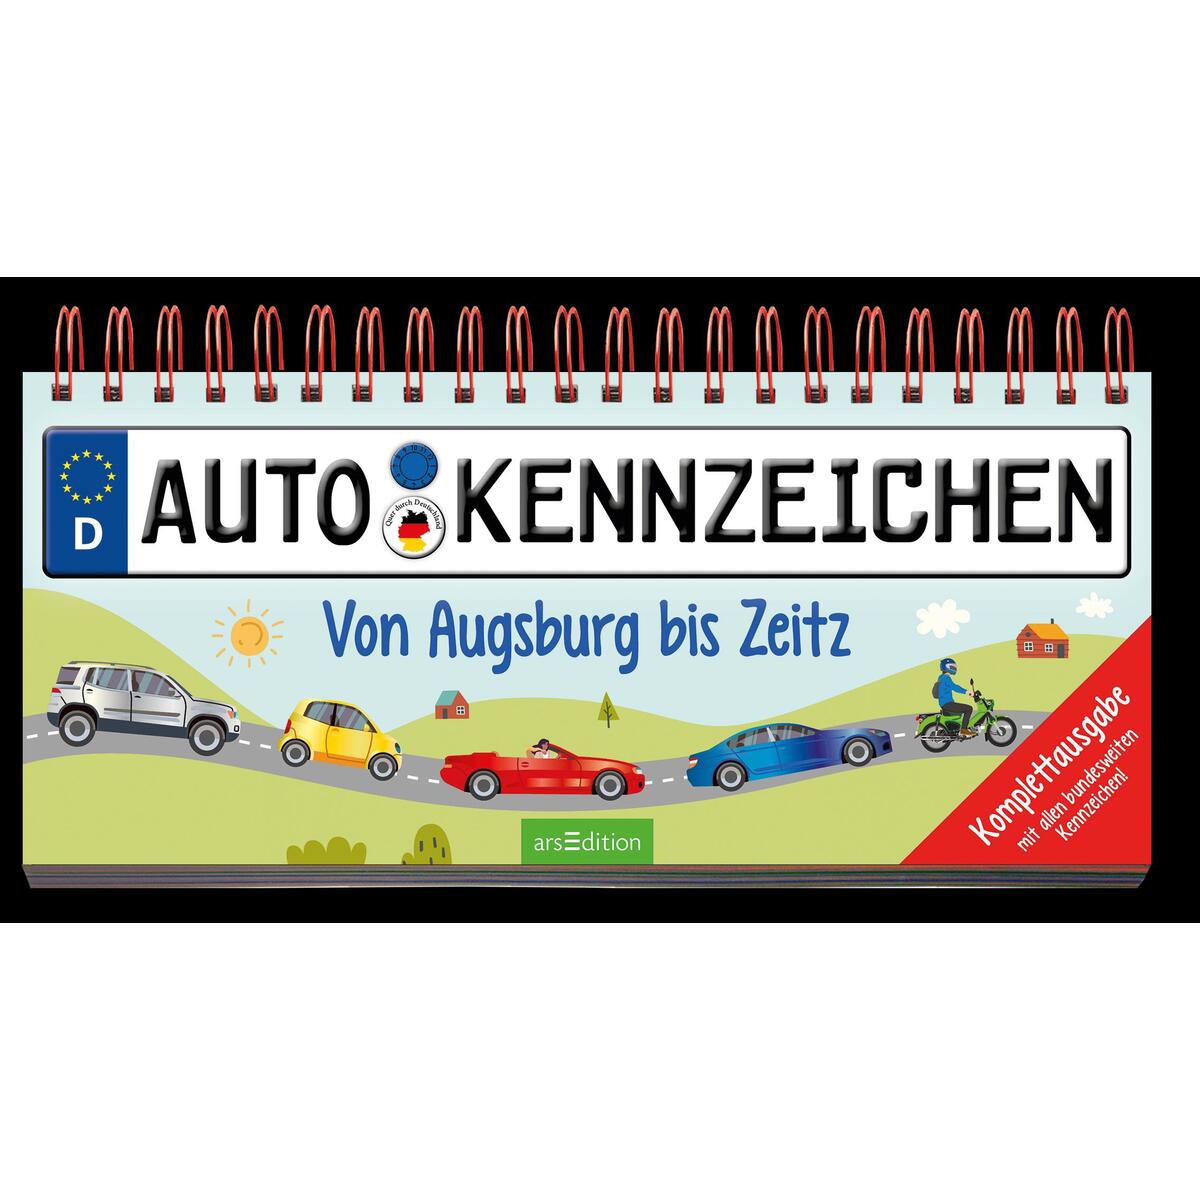 Autokennzeichen von Ars Edition GmbH